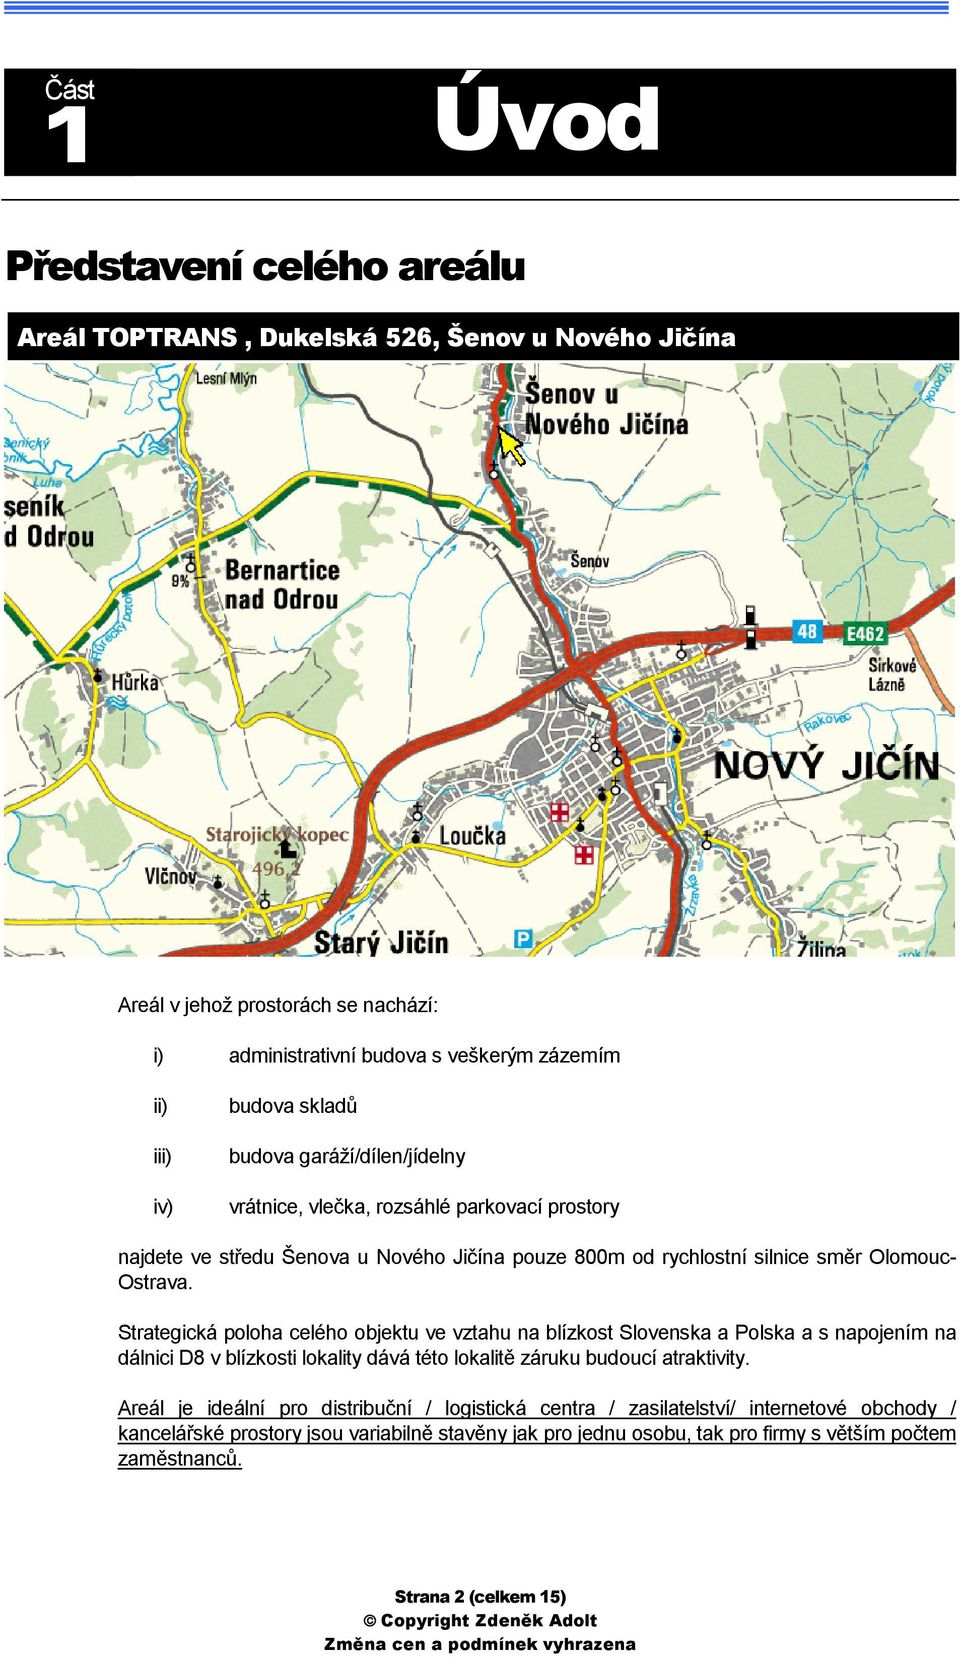 Strategická poloha celého objektu ve vztahu na blízkost Slovenska a Polska a s napojením na dálnici D8 v blízkosti lokality dává této lokalitě záruku budoucí atraktivity.